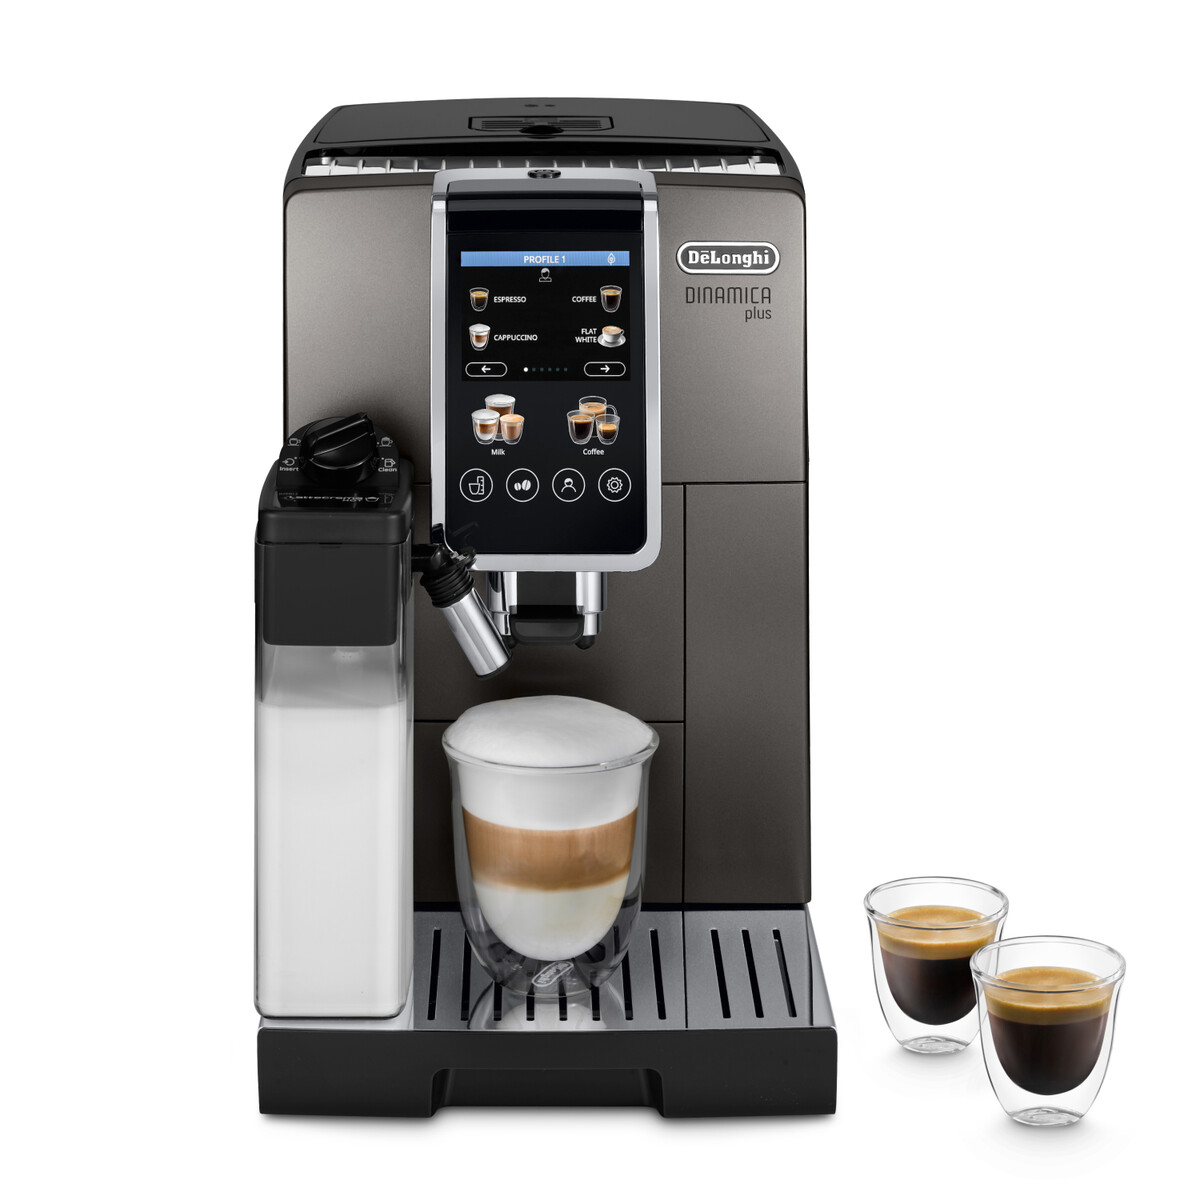 Автоматическая кофемашина DeLonghi Dinamica Plus ECAM380.95.TB